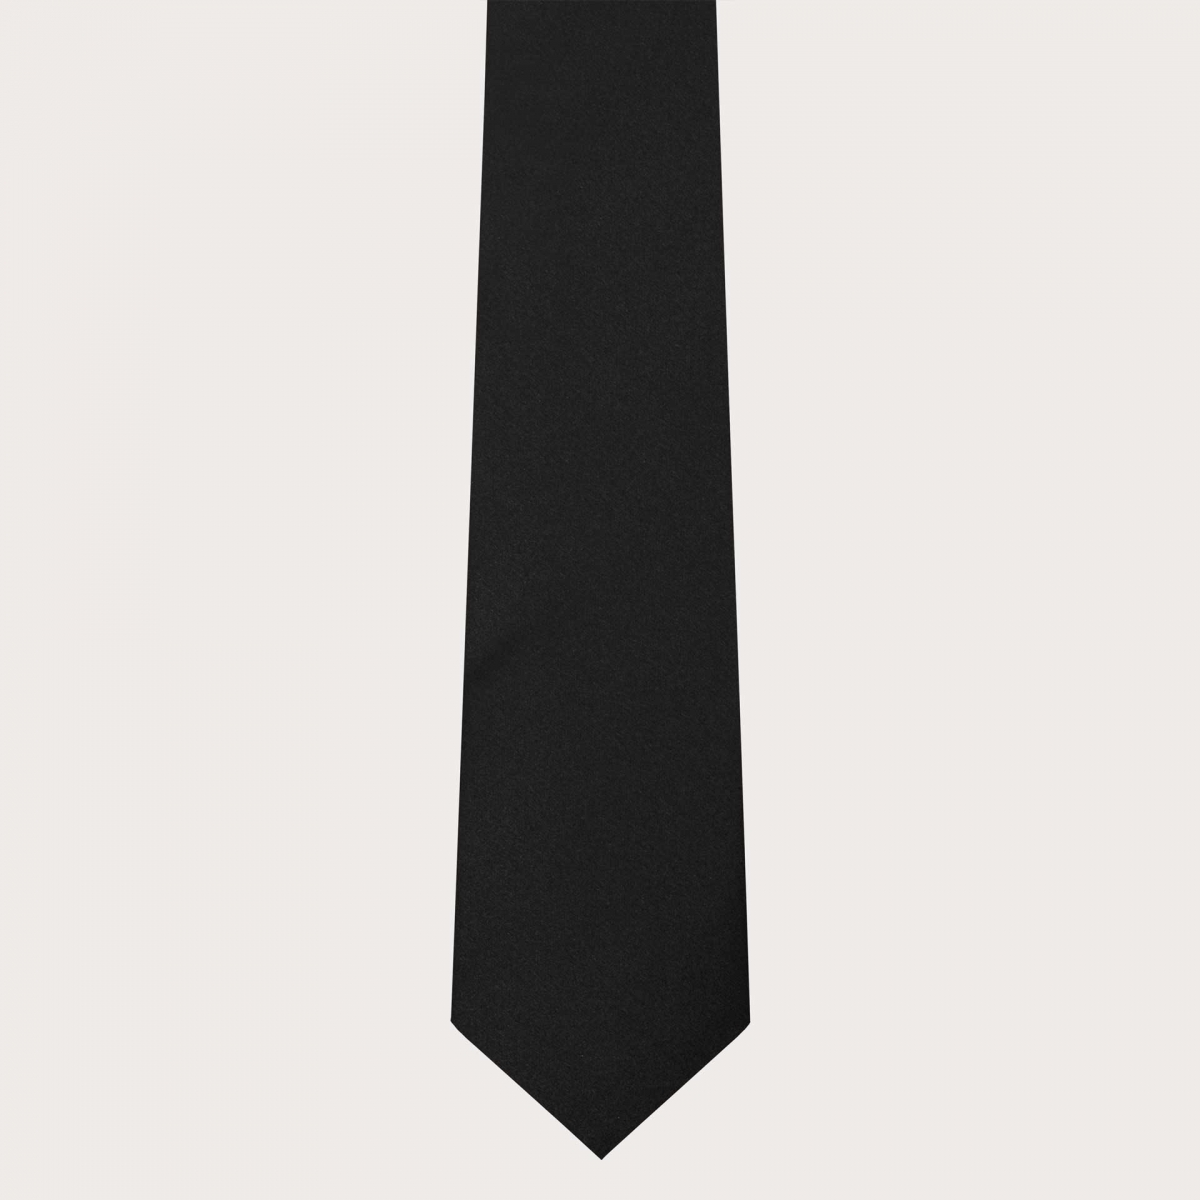 BRUCLE Formelle Krawatte aus schwarzem Satin